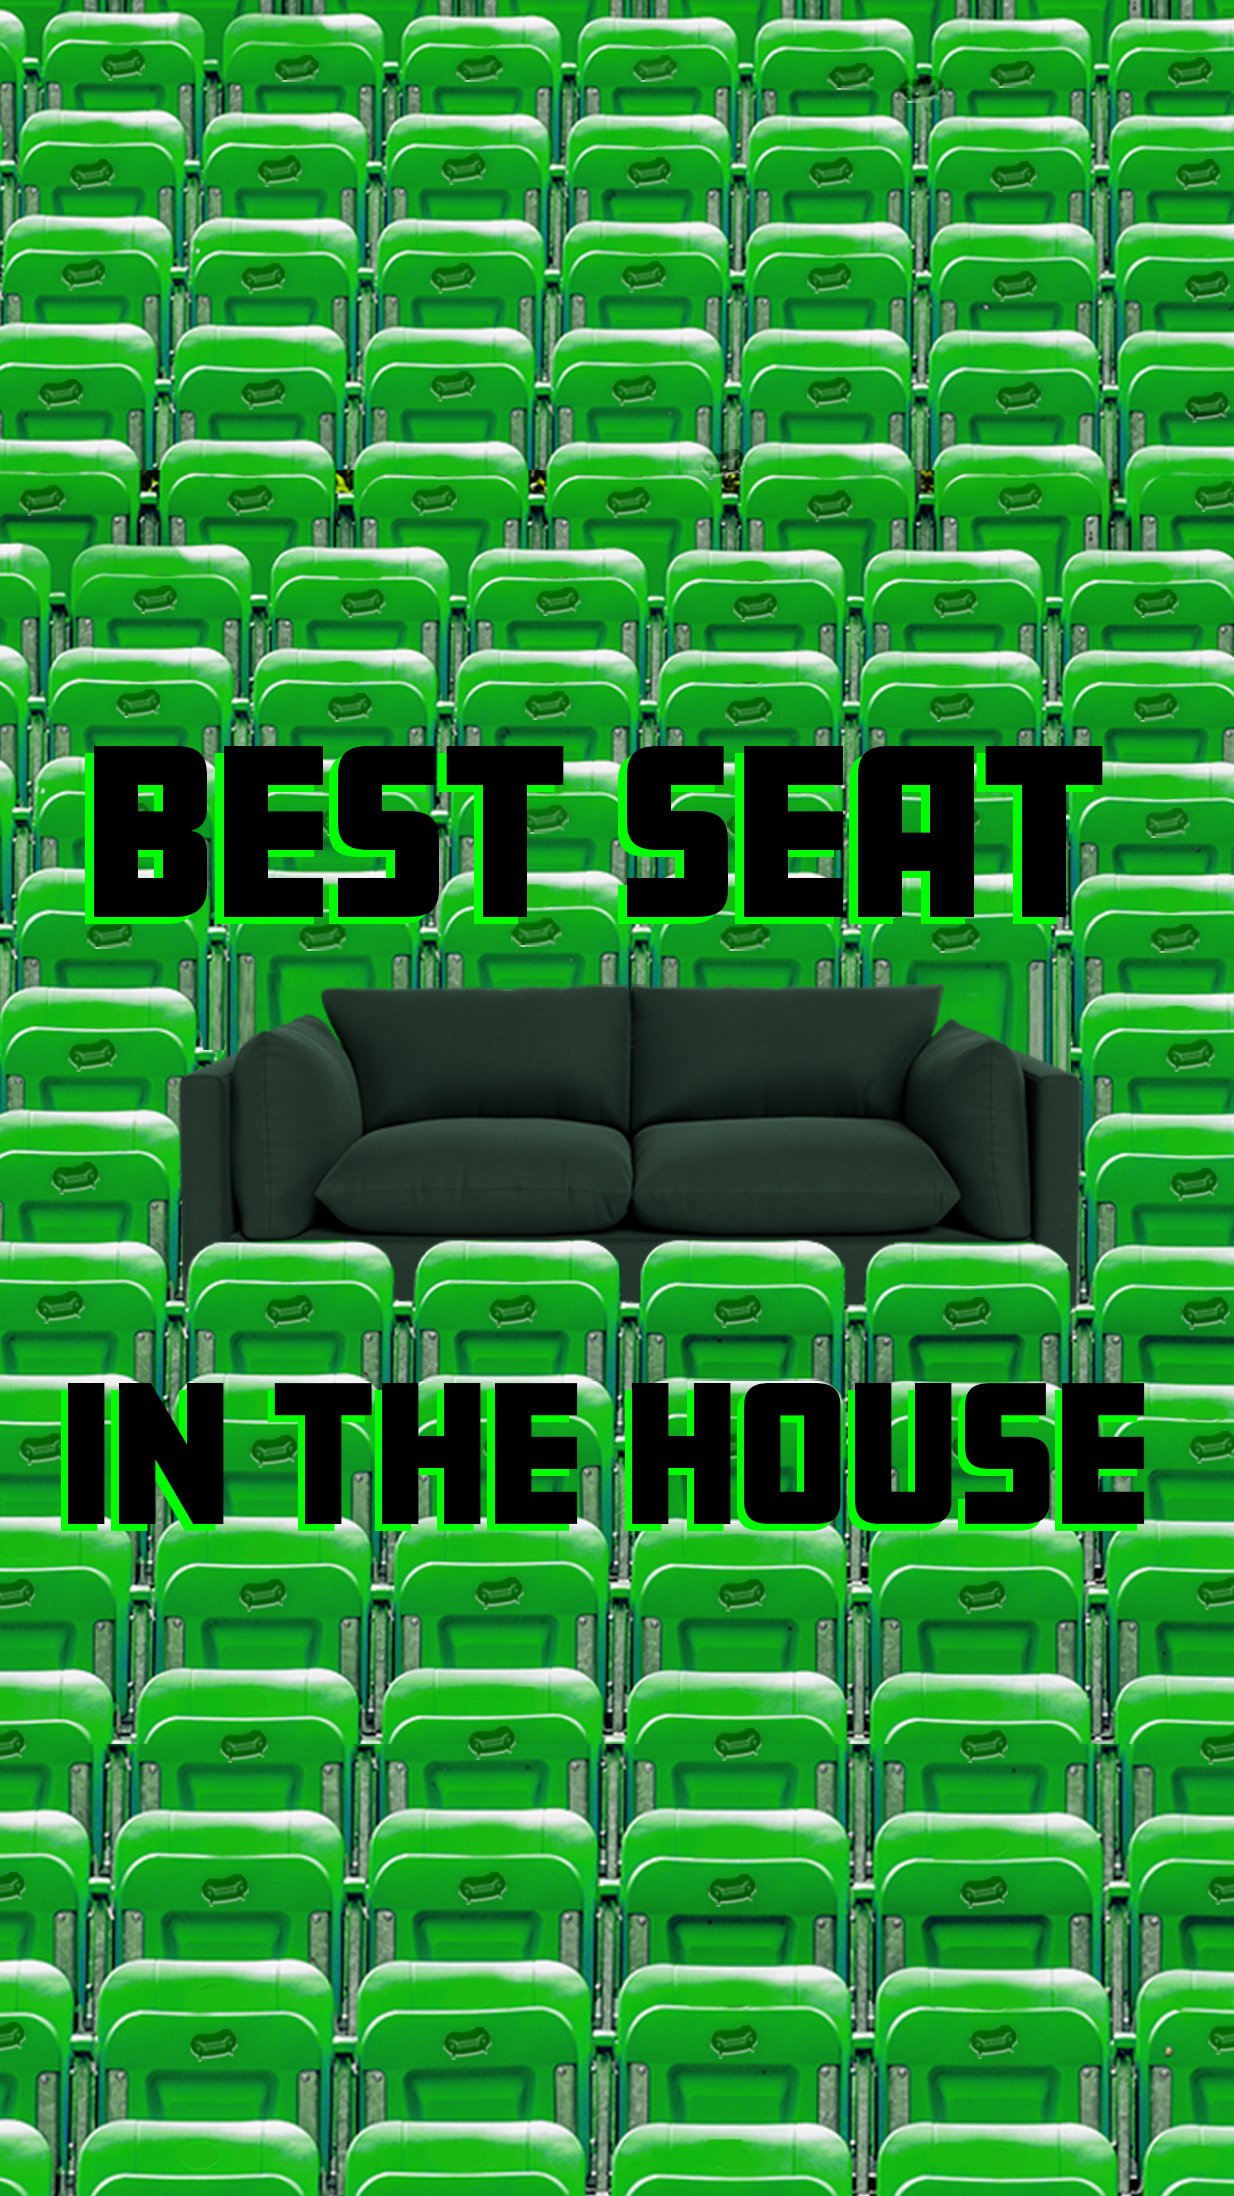 beast seat - stories.jpg